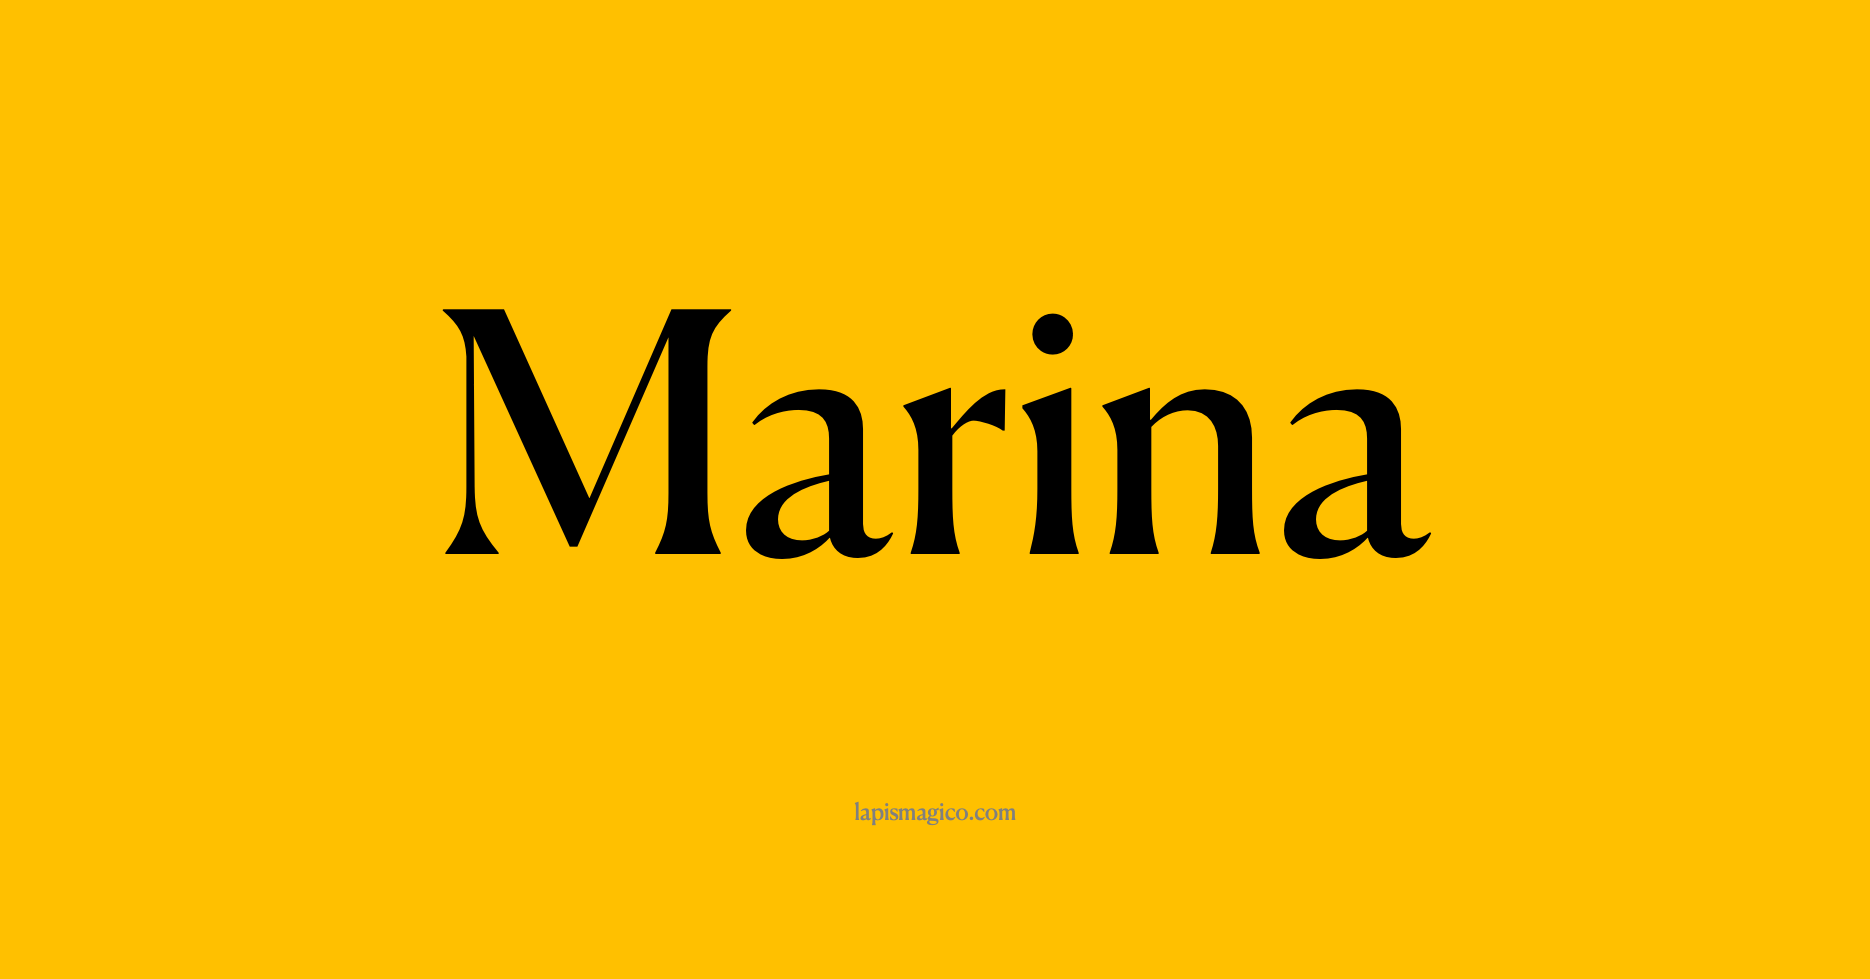 Nome Marina